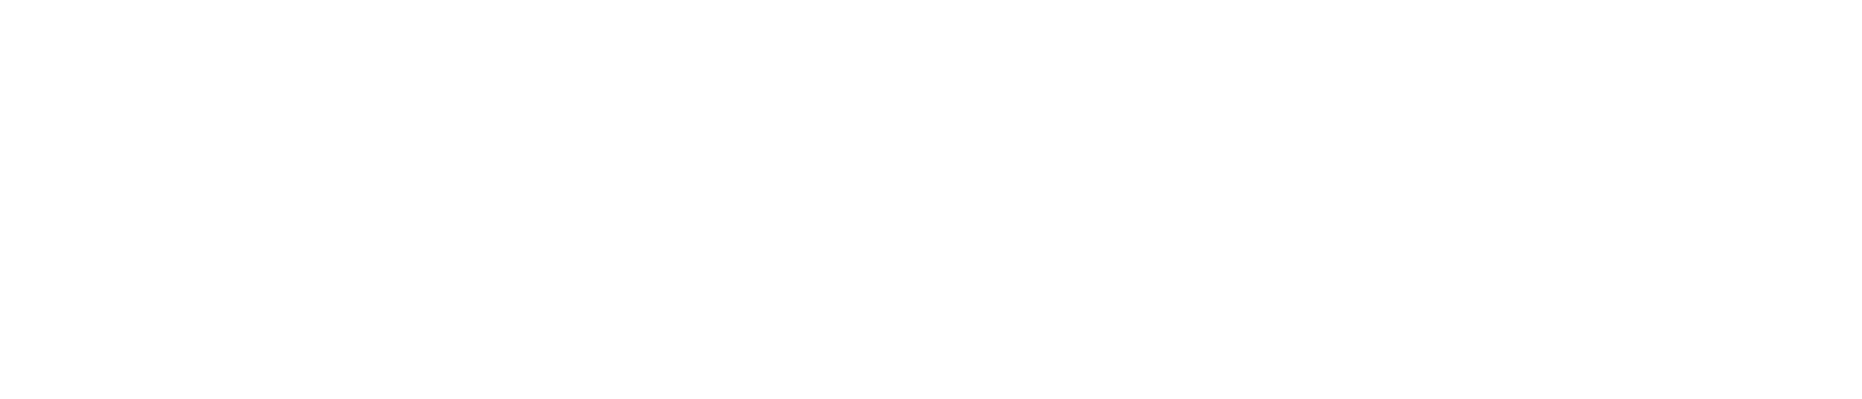 Virtual SC